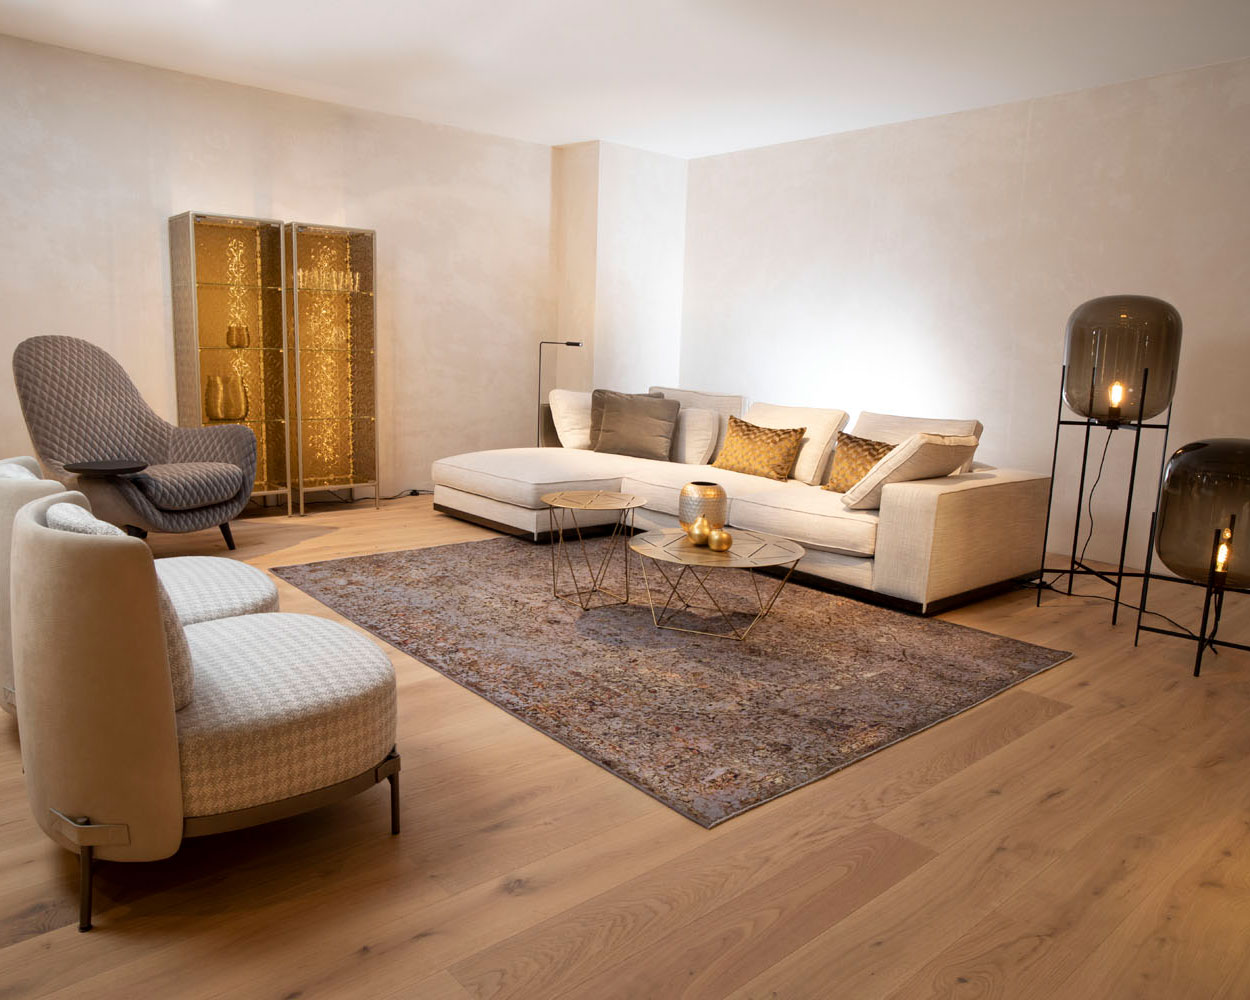 Persian Art Teppich in einem golden eingerichtetem Wohnzimmer